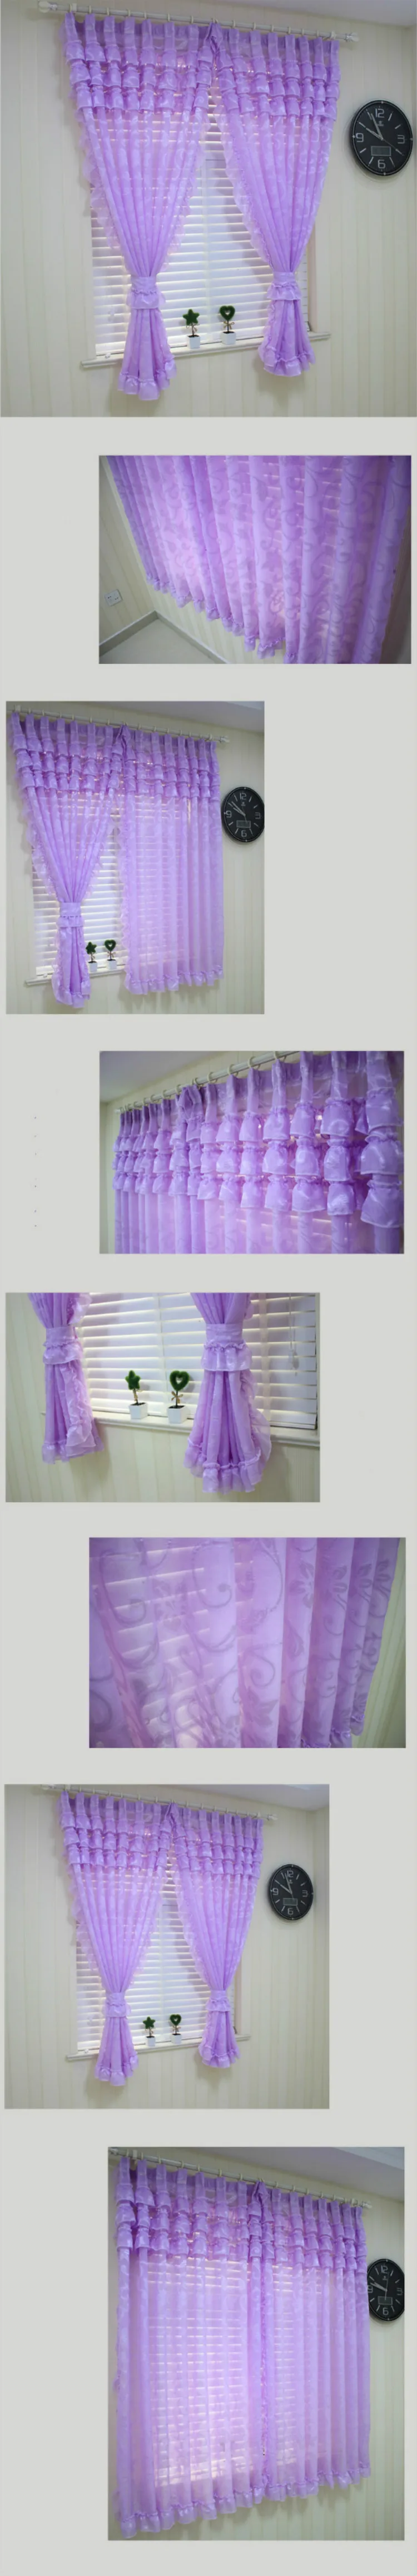 Деревенский фиолетовый розовый кружевной отвесный занавес для окна для детей принцесса спальня жаккард Тюль штора со сколлопом кружева